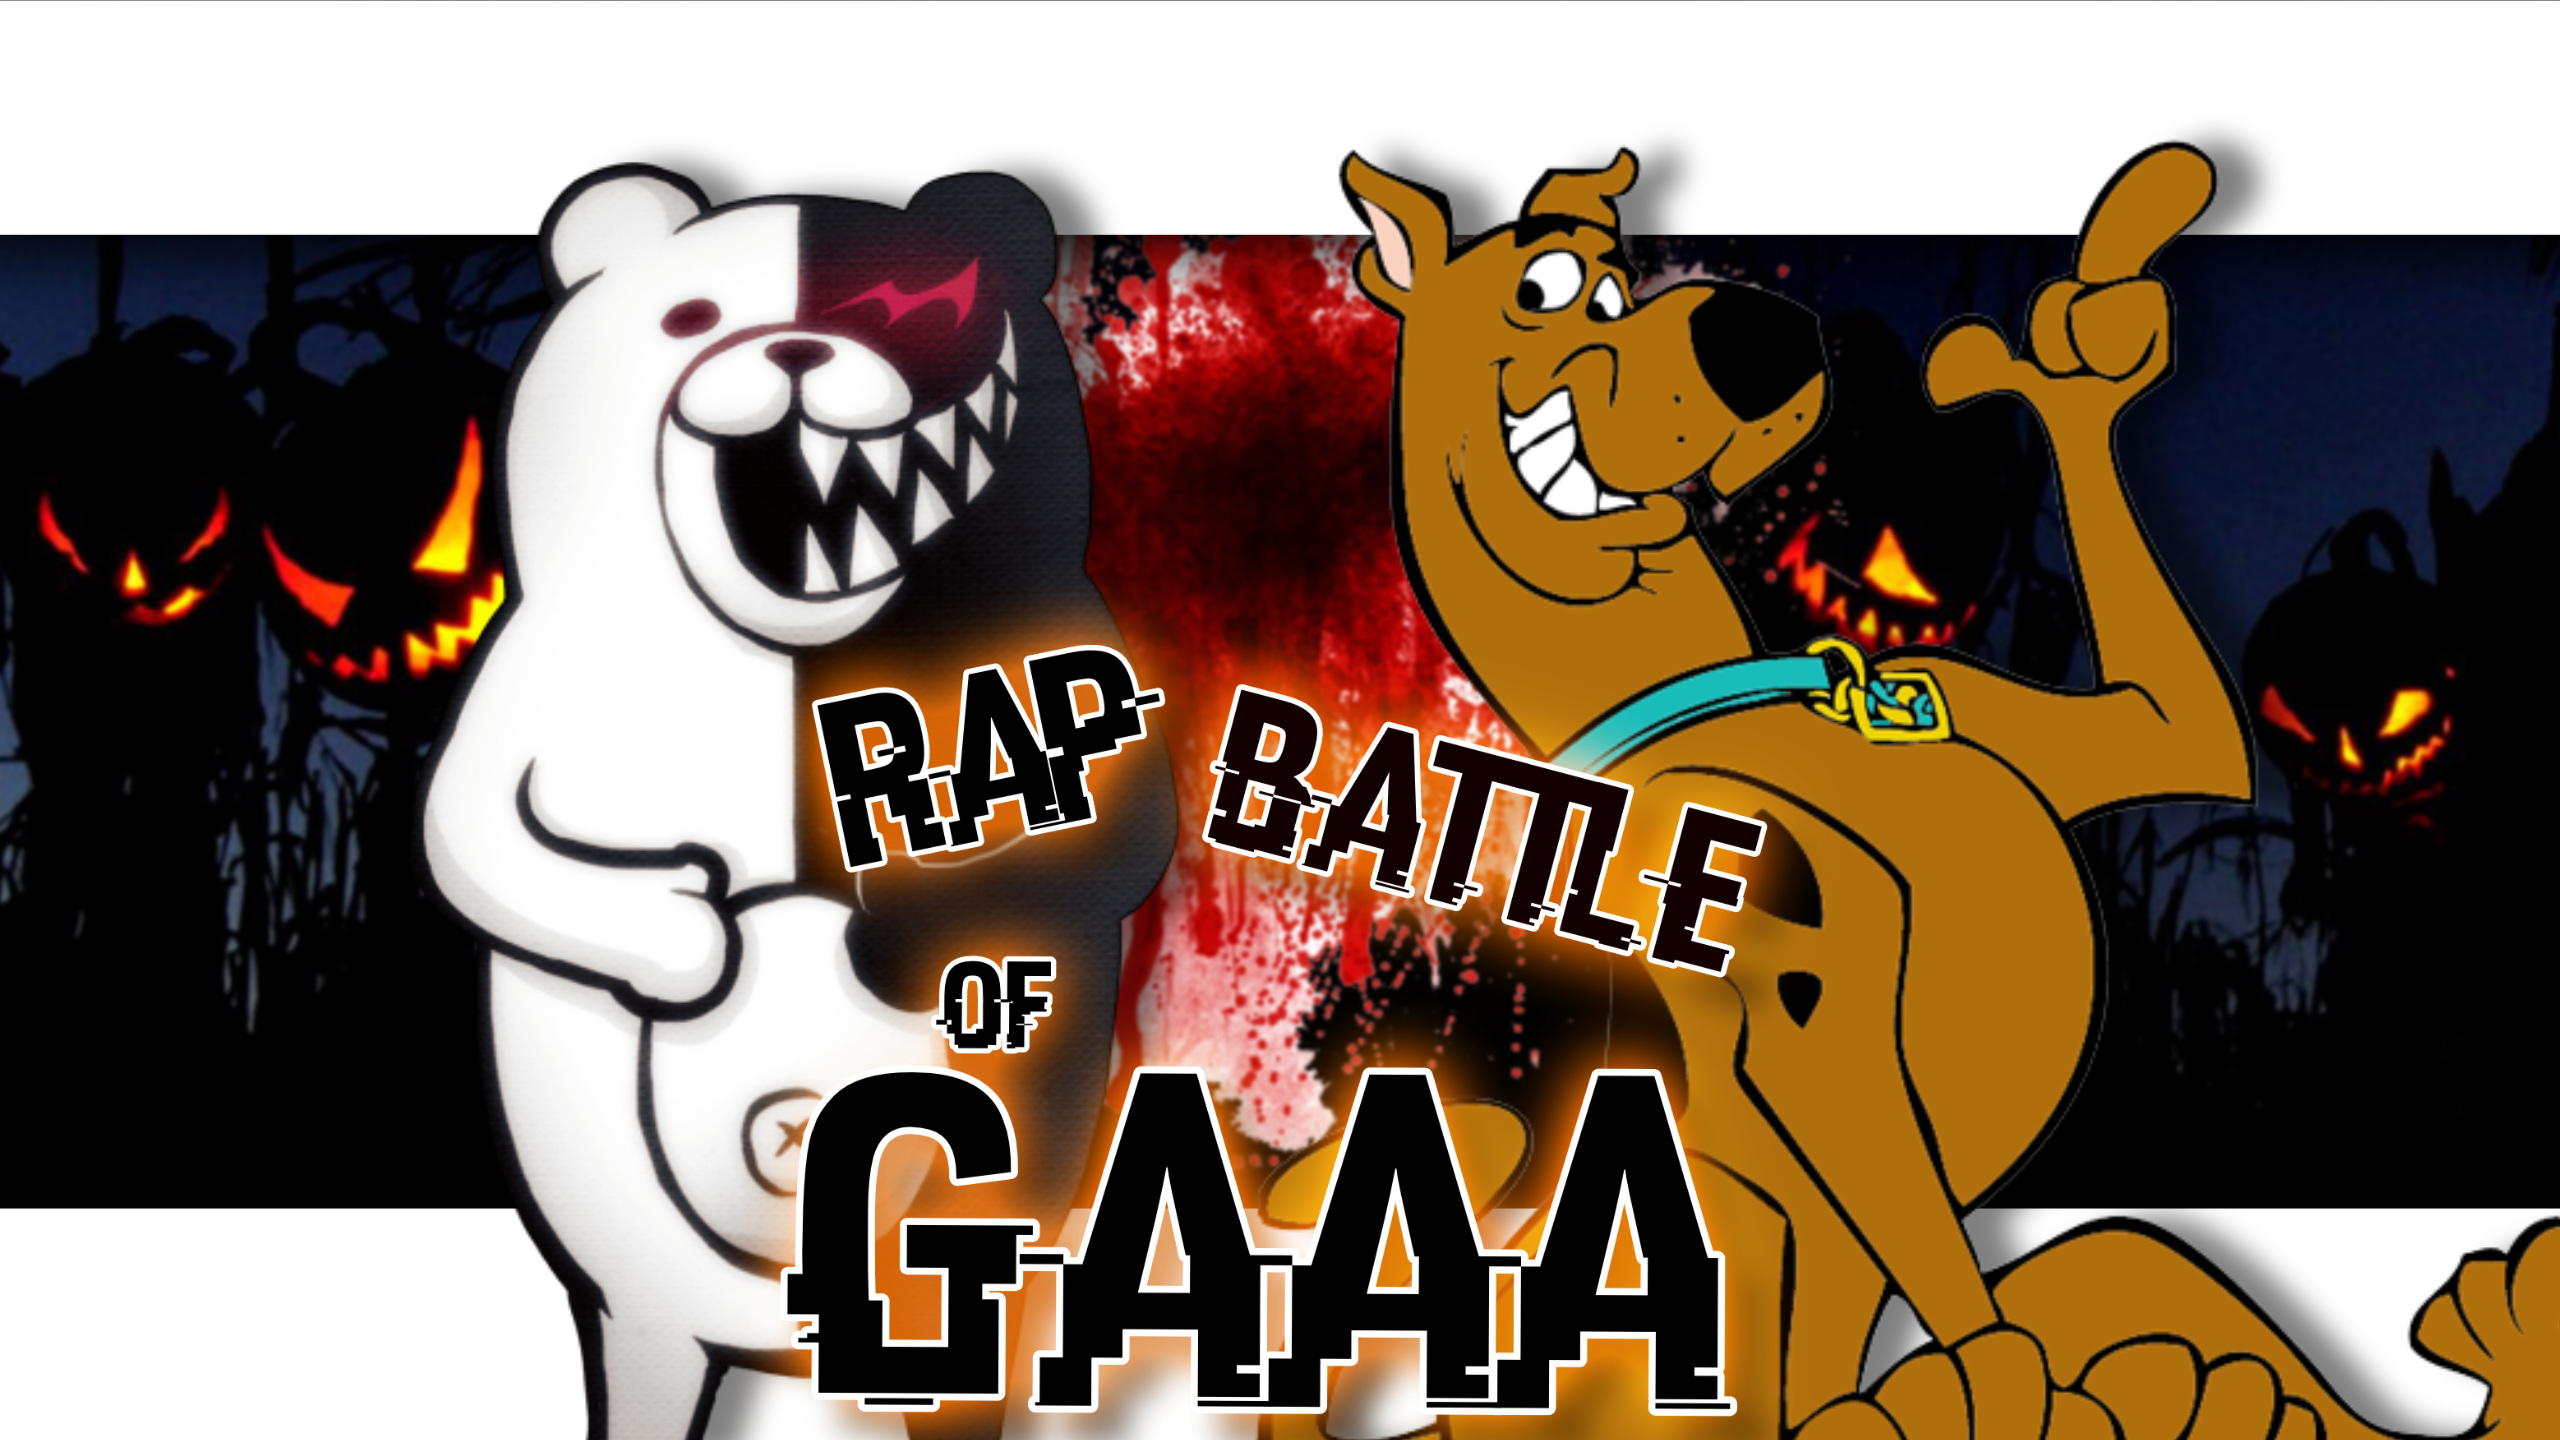 The Grinch VS Scrooge, Wiki Rap Battle Of GAAA